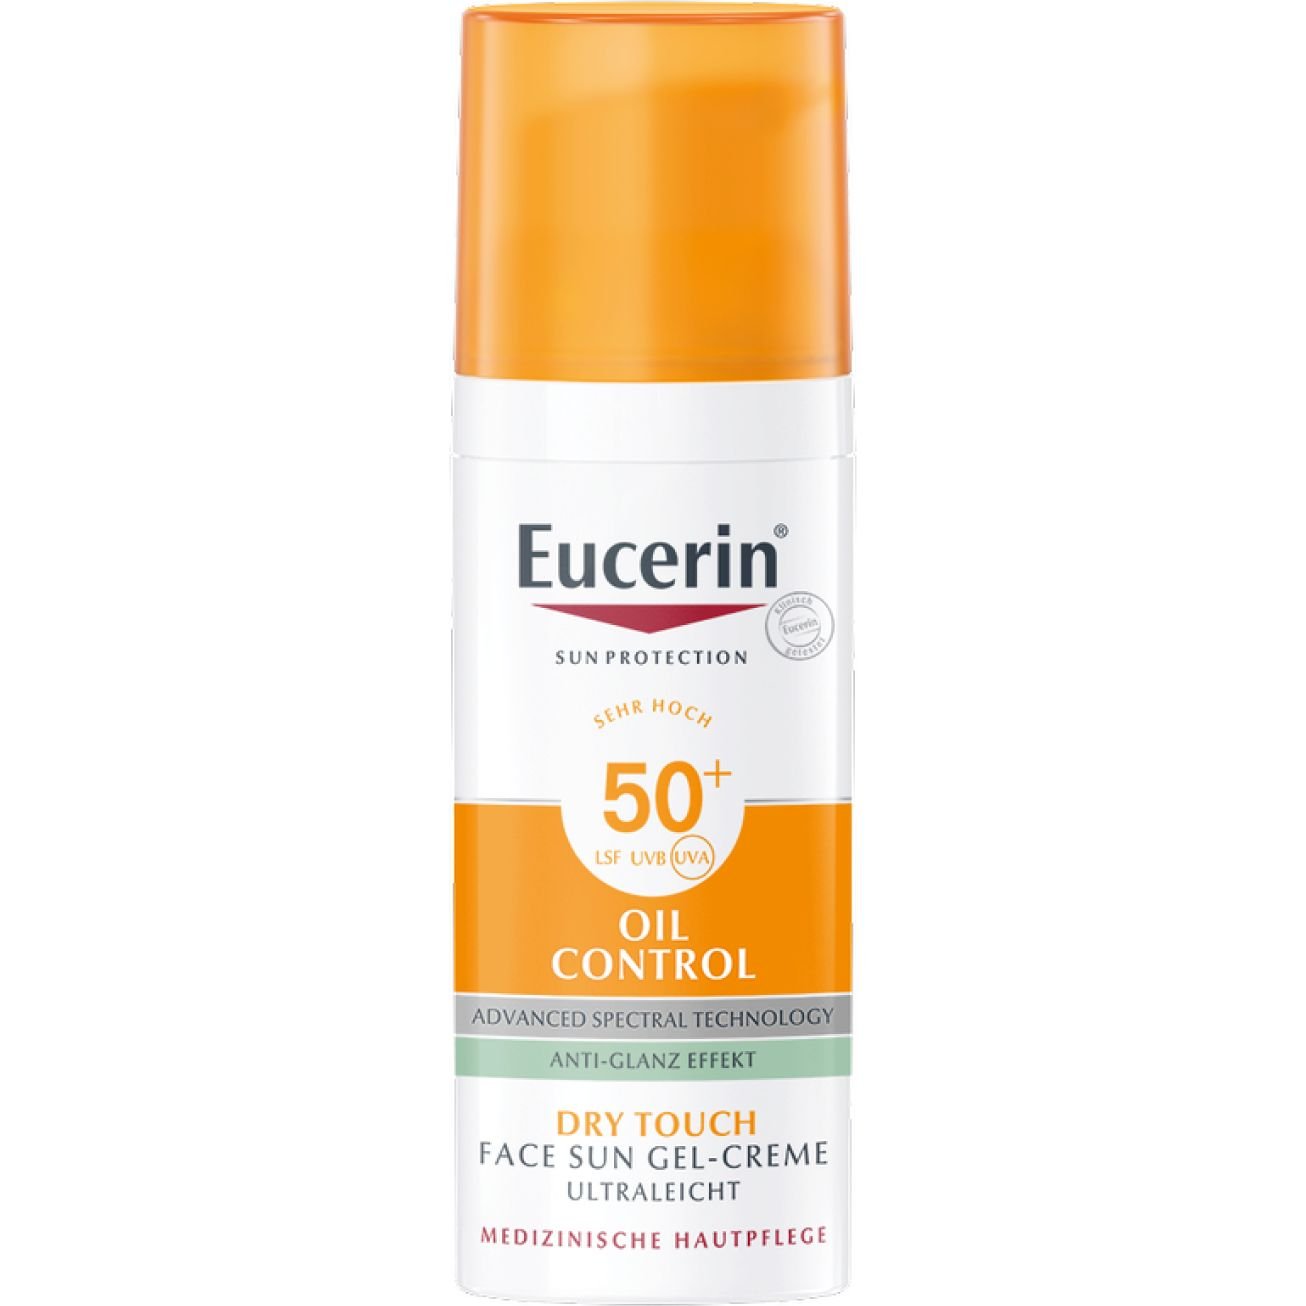 Сонцезахисний гель-крем для обличчя Eucerin Oil Control SPF 50 з ефектом матування, 50 мл - фото 1